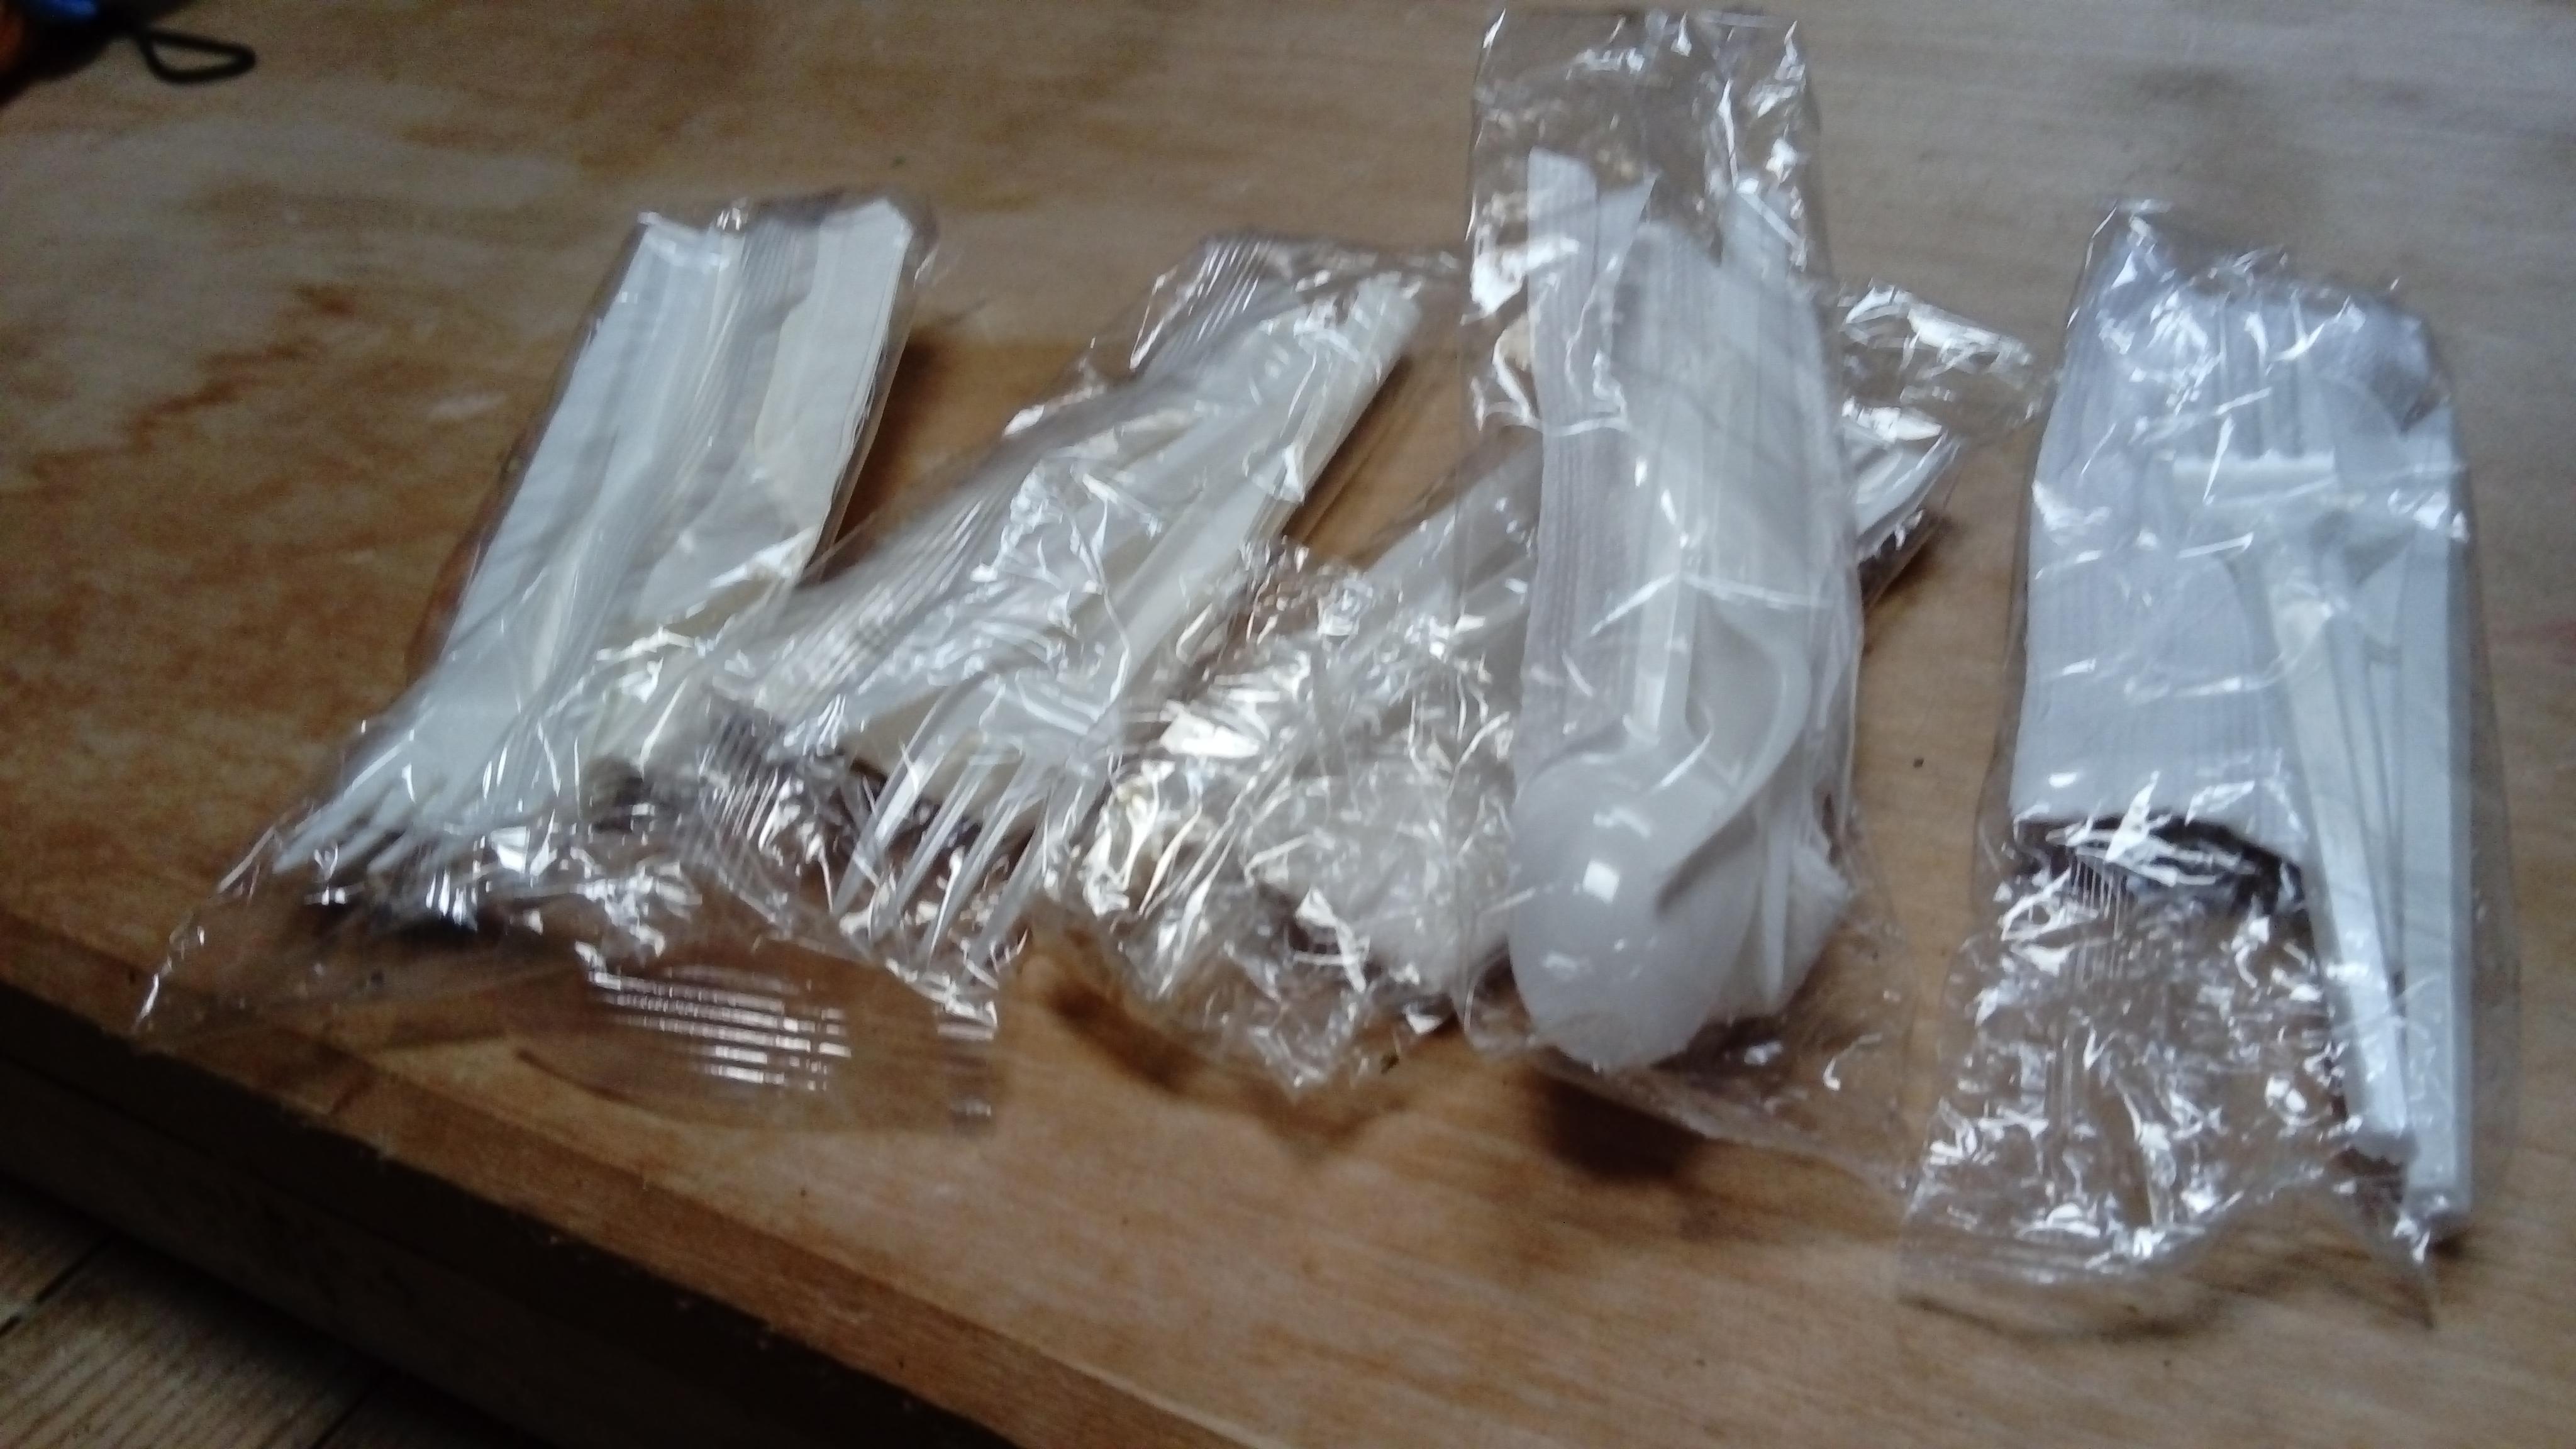 troc de troc lot de couverts en plastique avec serviette en papier. image 0